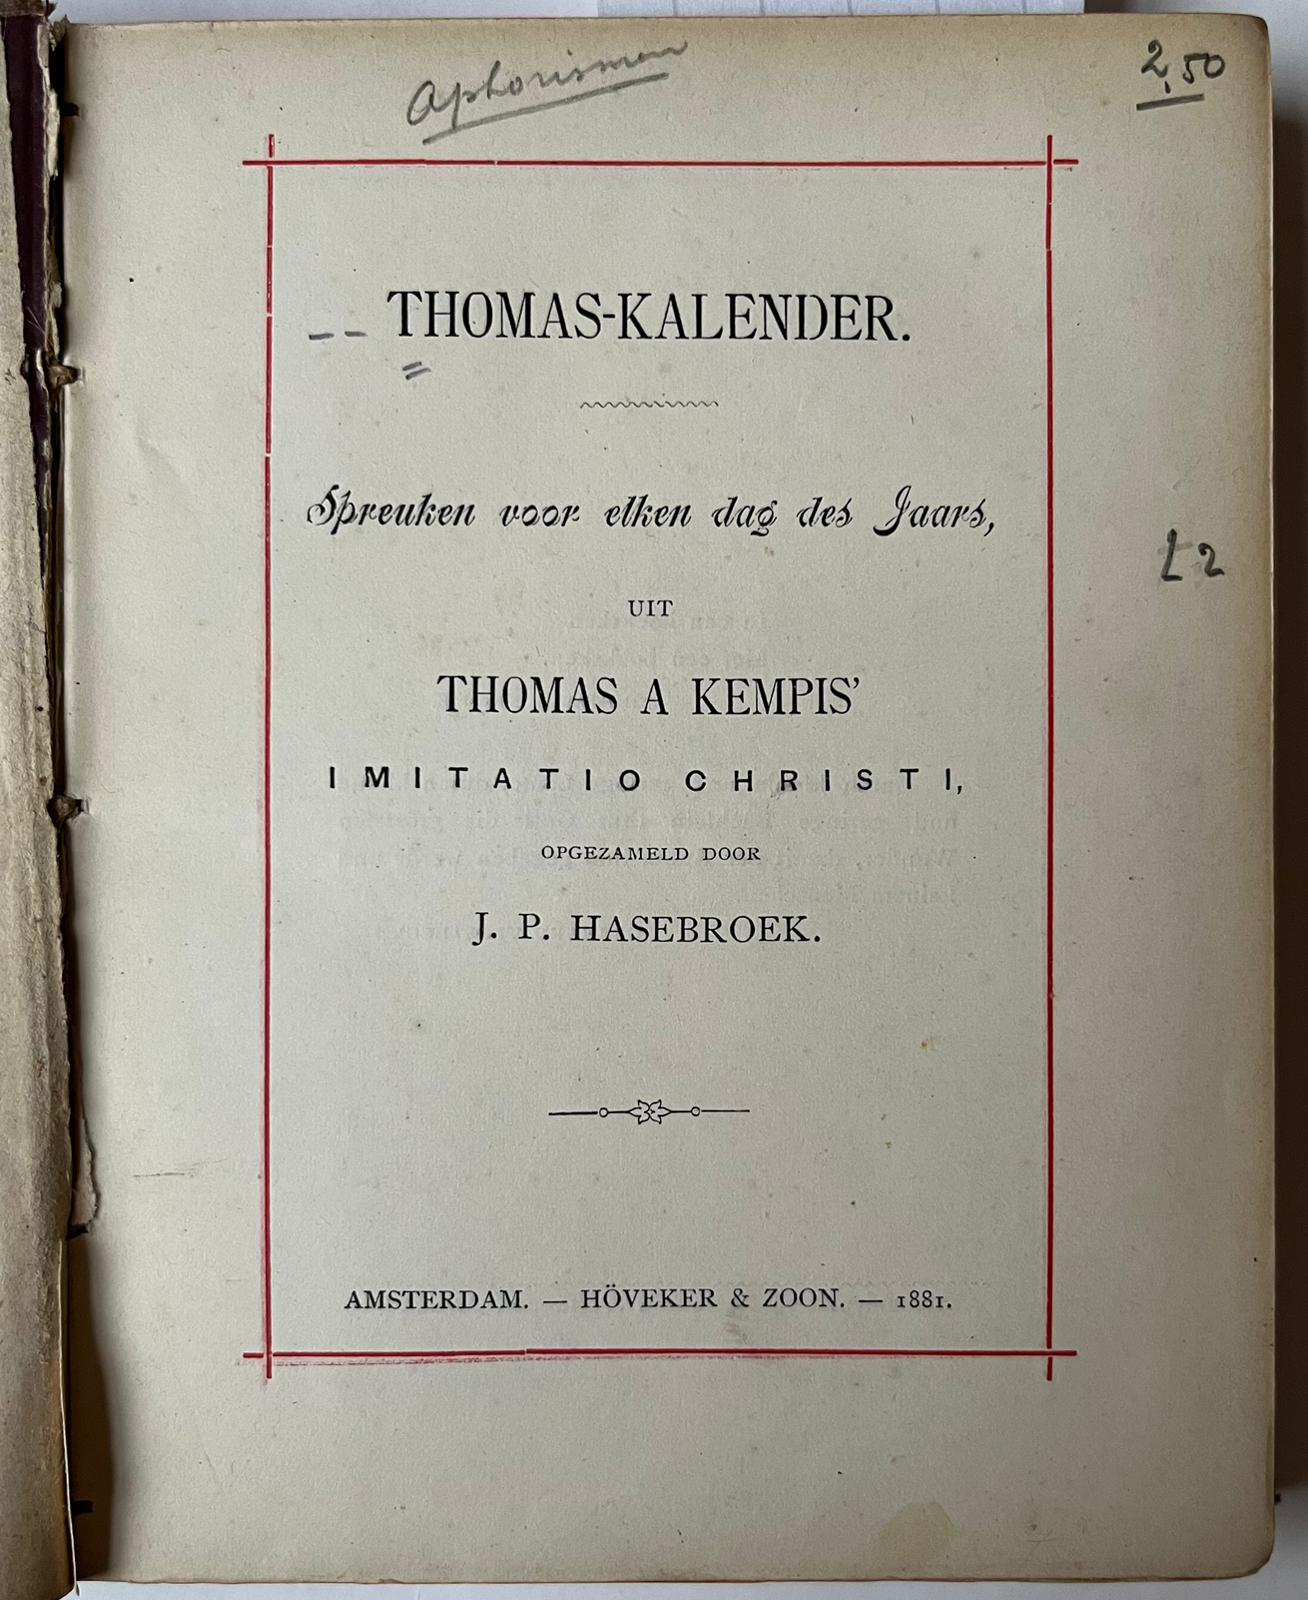 [Literature 1881] Thomas-kalender. Spreuken voor elken dag des jaars, uit Thomas a Kempis’ Imitatio Christi. Opgezameld door J.P. Hasebroek. Amsterdam, Höveker & zoon, 1881, 3-21 [3] 294 pp.